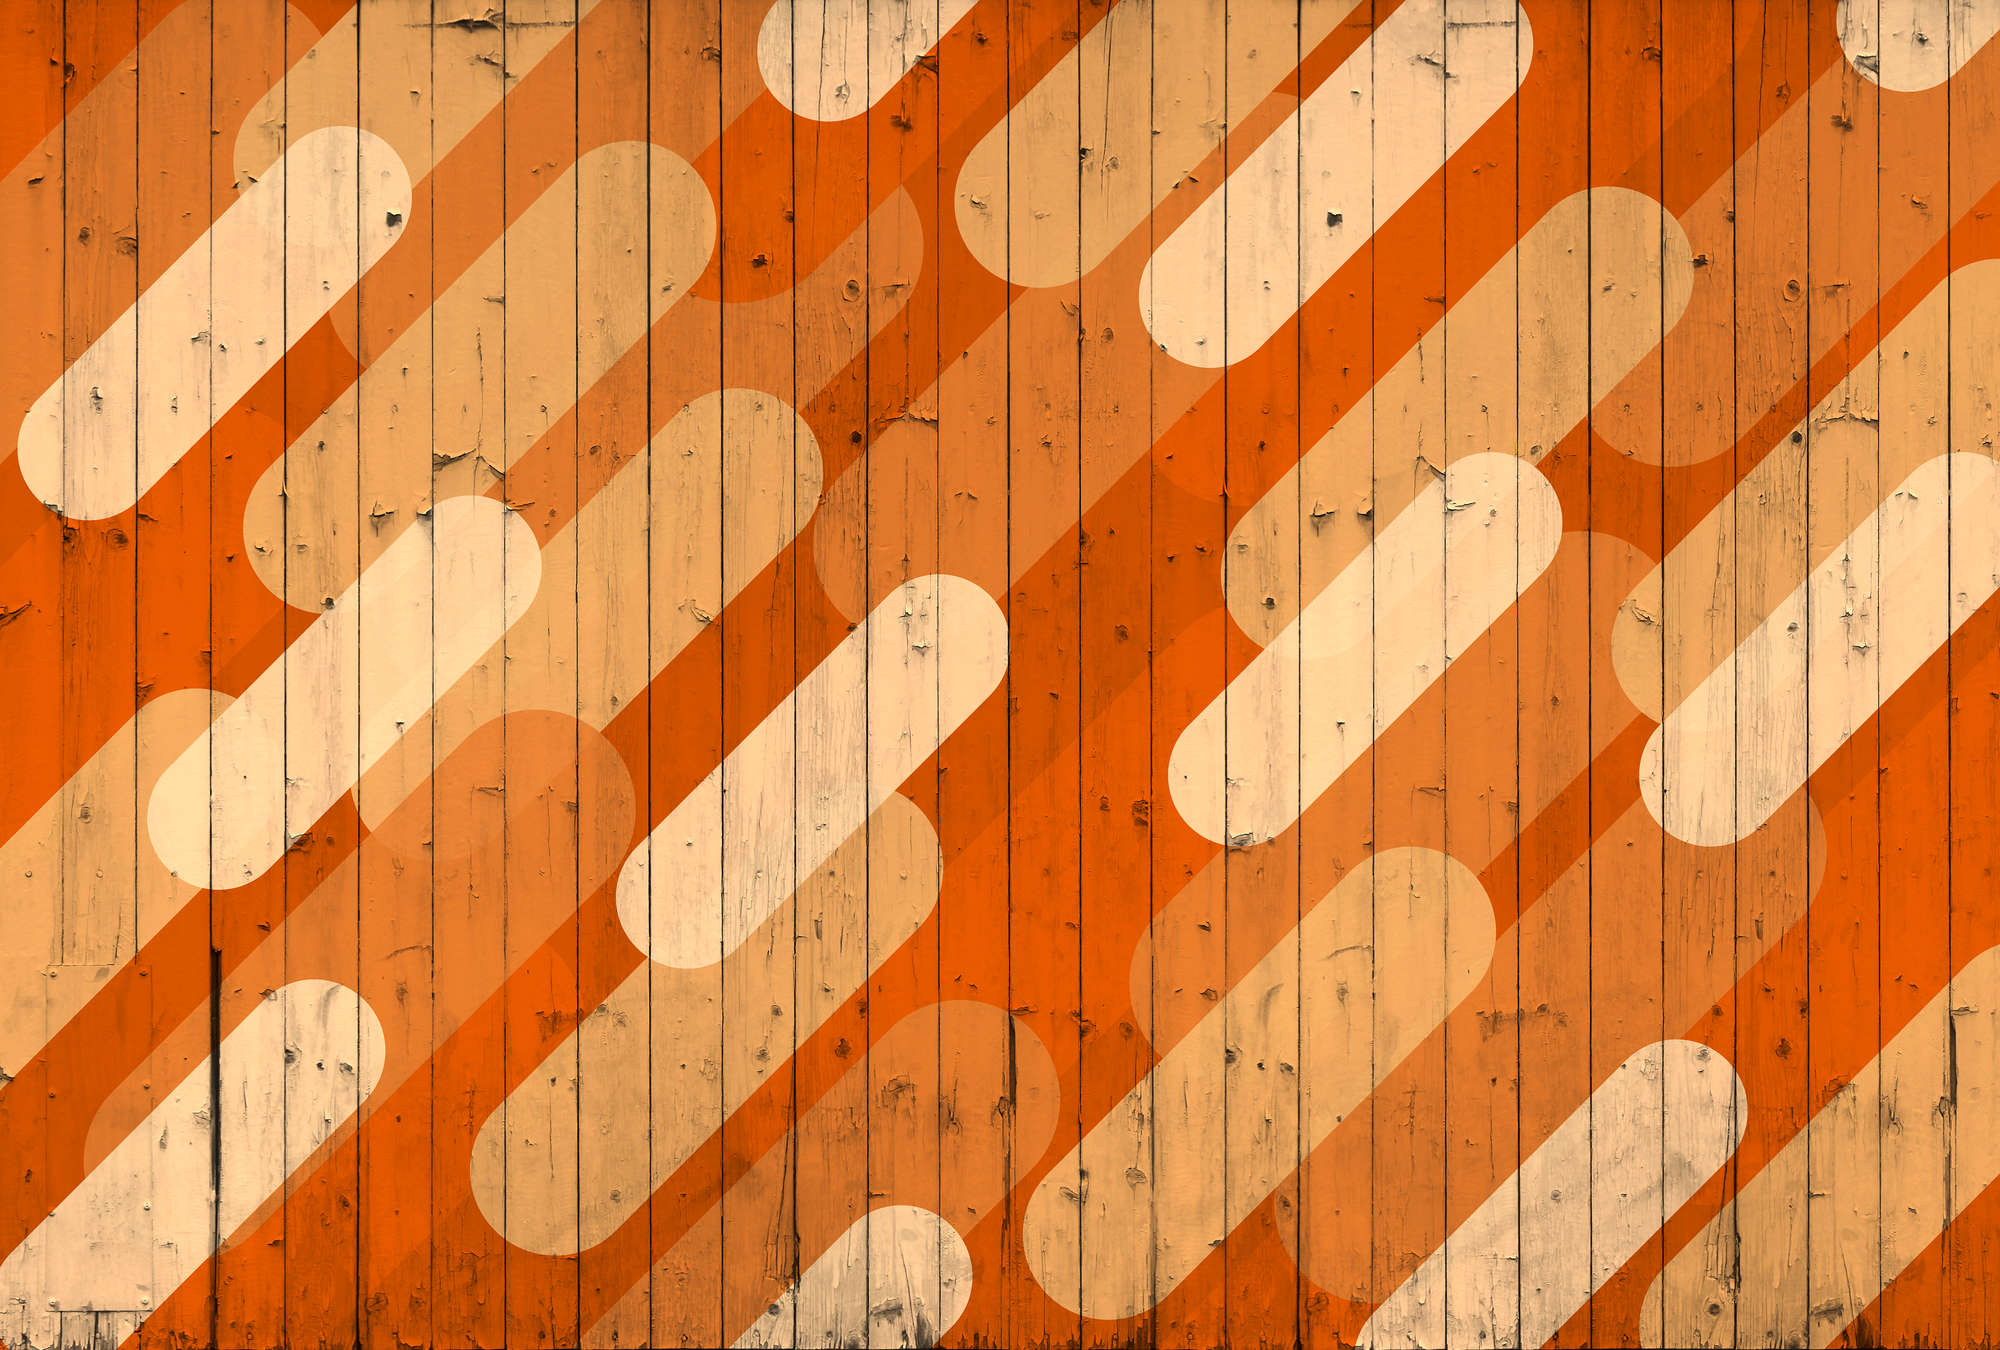             Muurschildering met bordlook & diagonaal streepdesign - Oranje, Beige, Crème
        